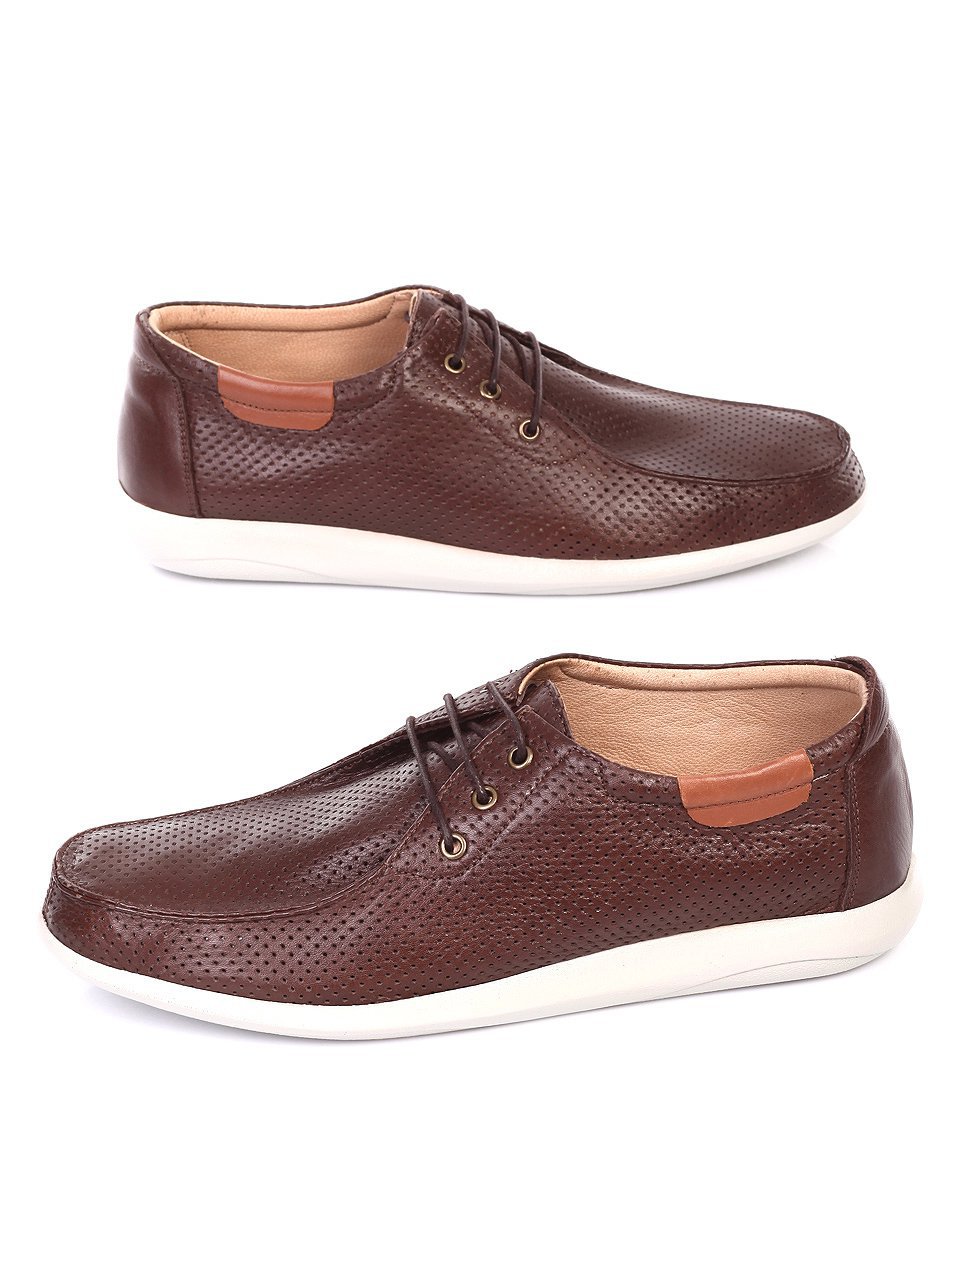 Елегантни мъжки обувки от естествена кожа в кафяво 7AT-18588 brown